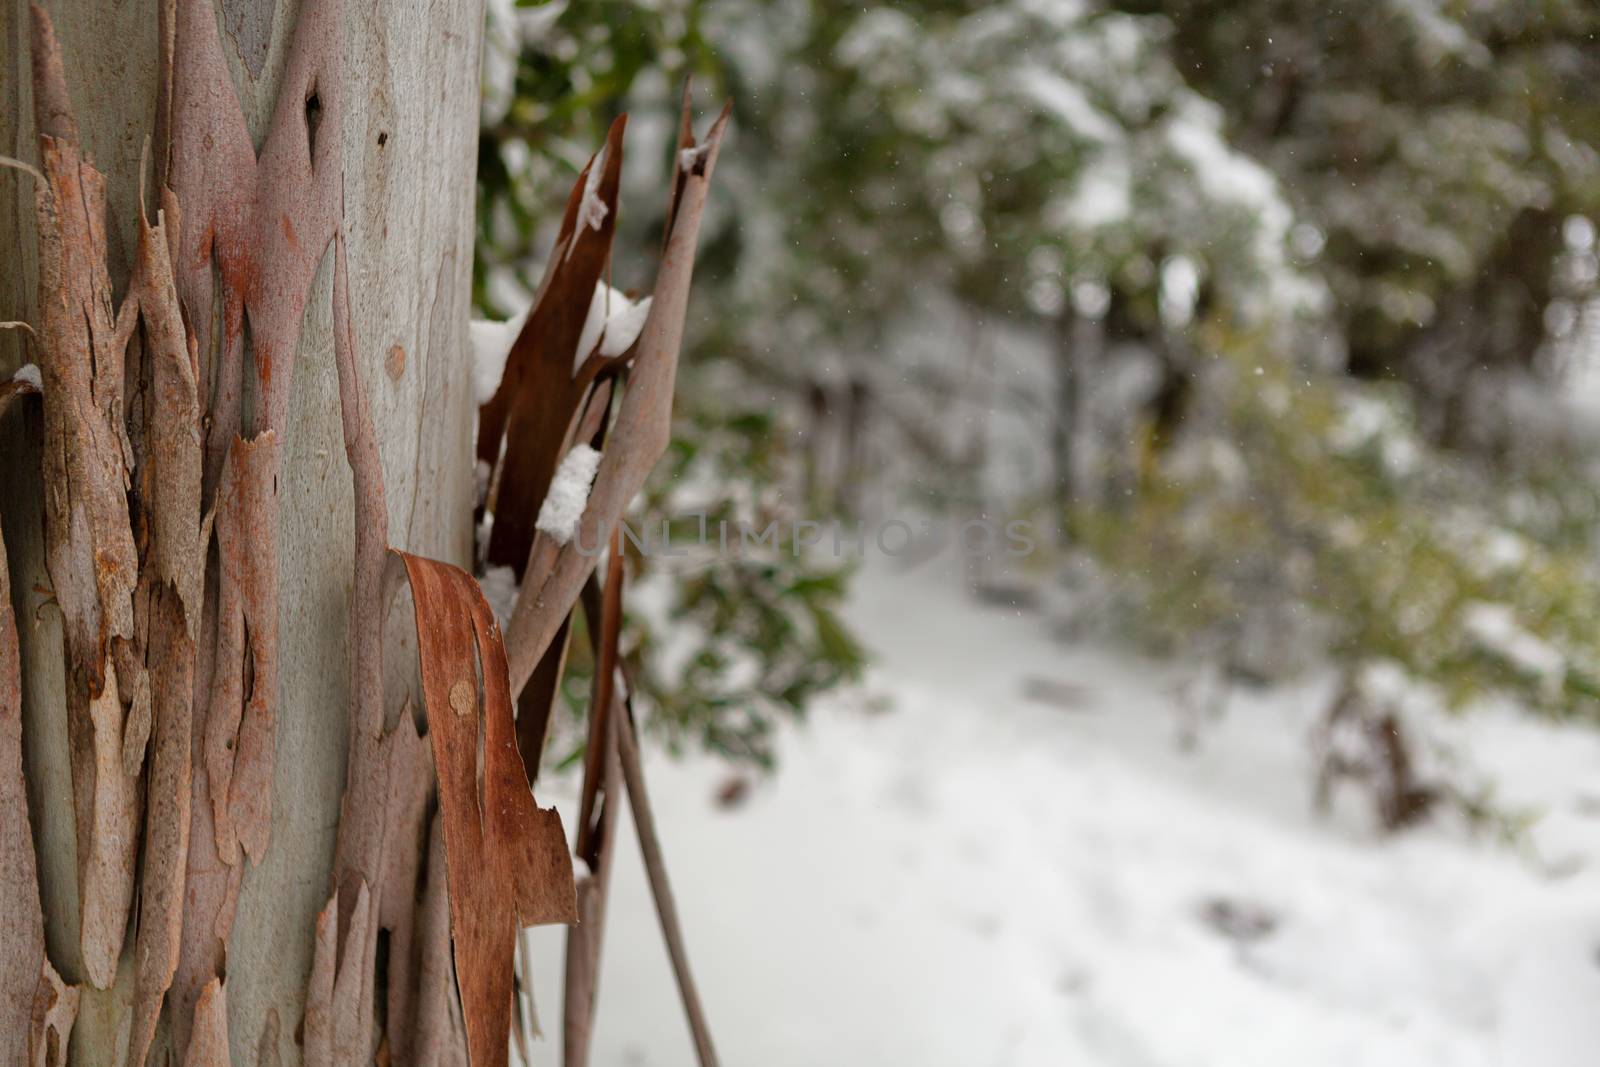 Gum tree bark in a snowy Australian landscape by lovleah